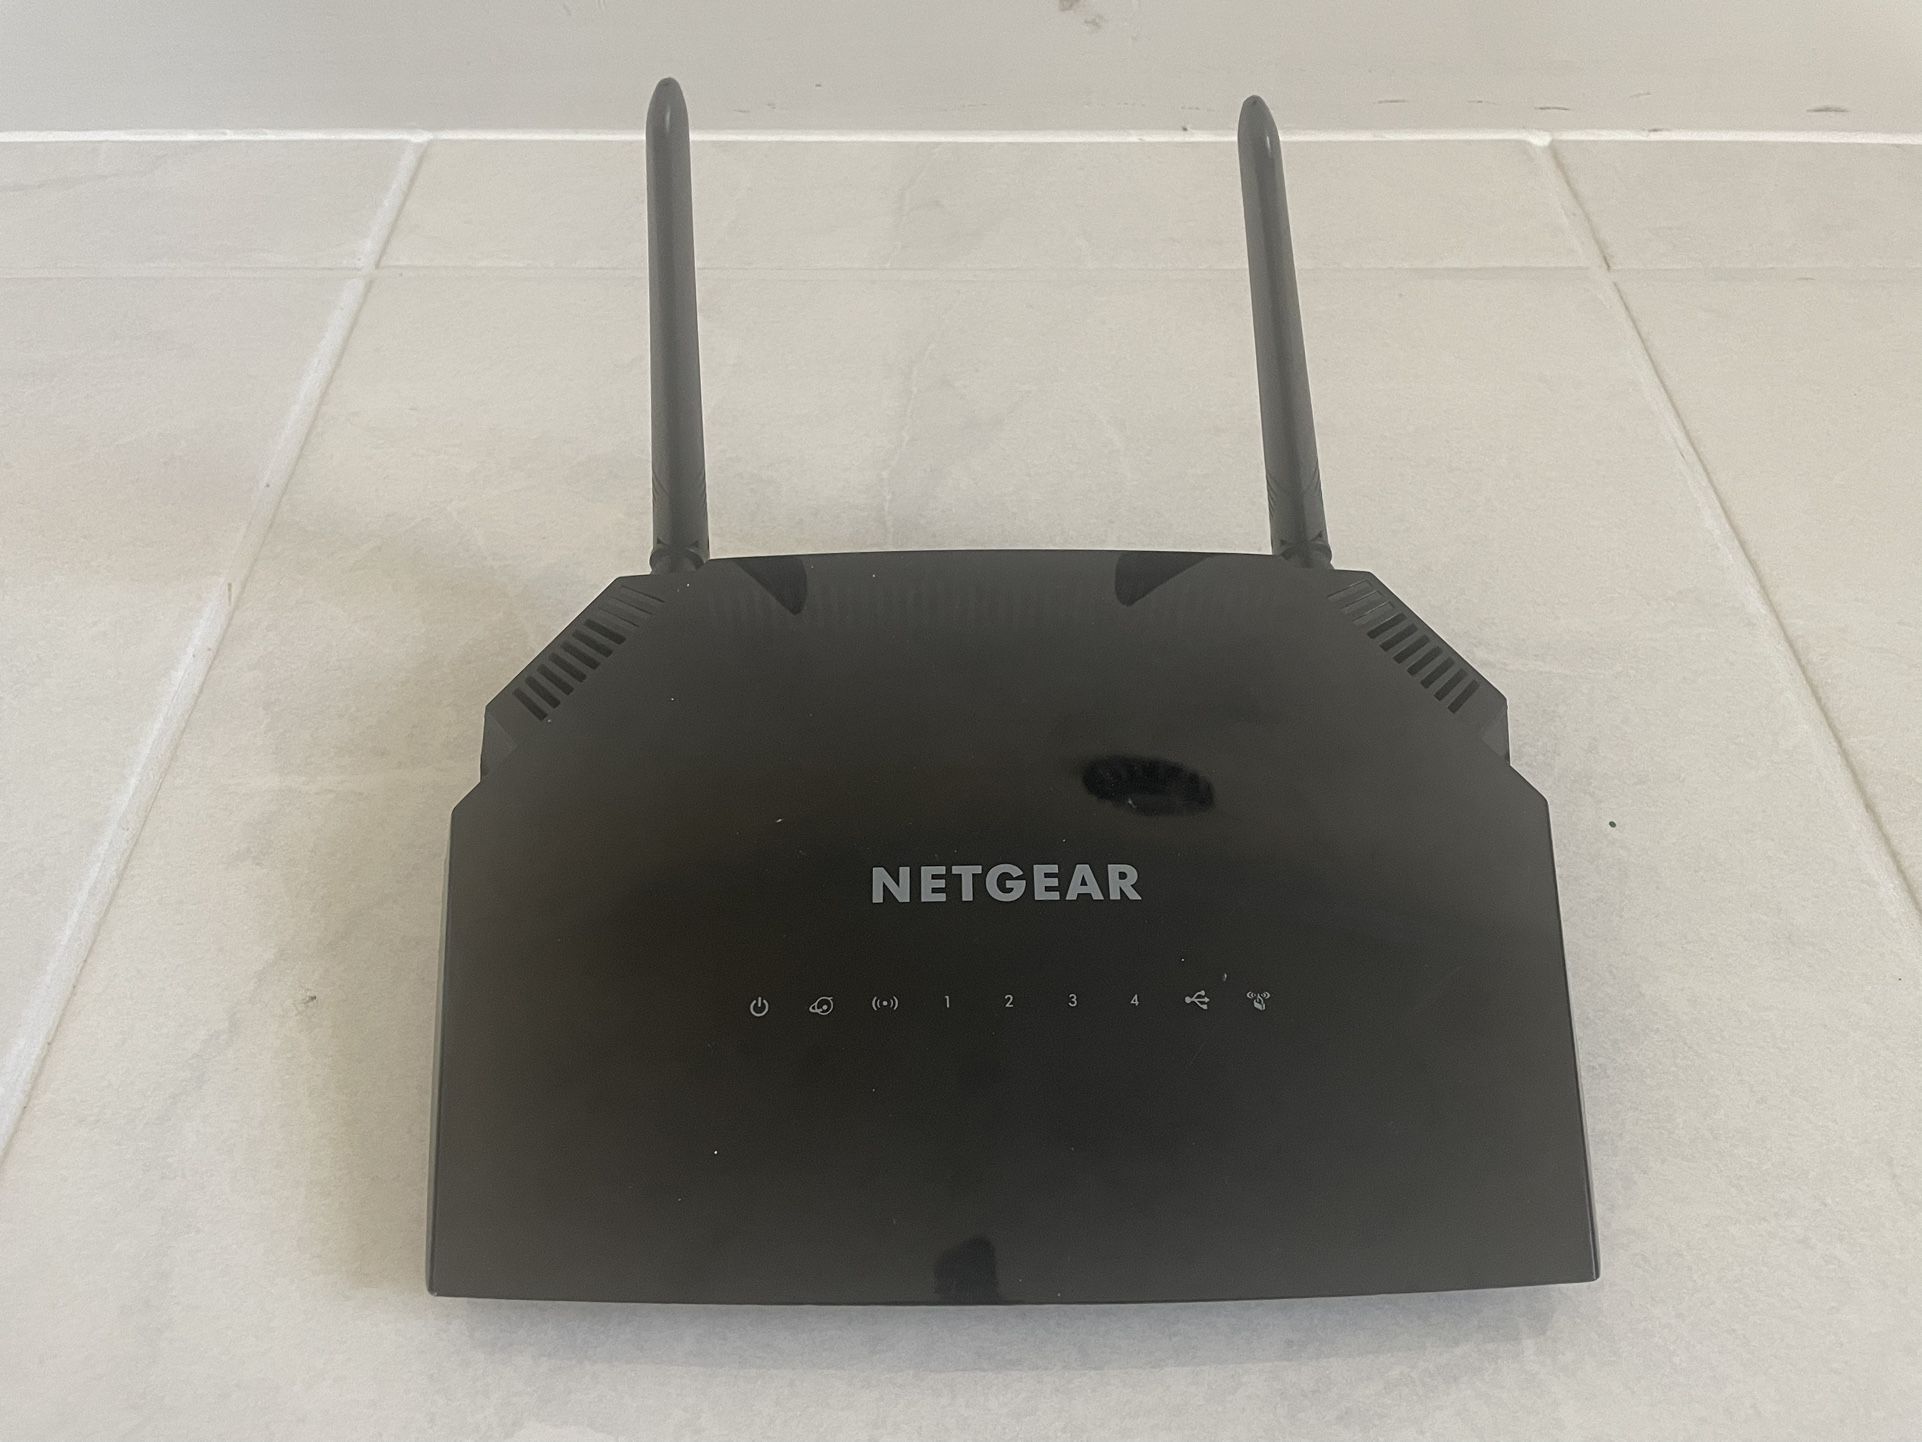 Netgear AC1200 Smart WiFi Router With External Antennas